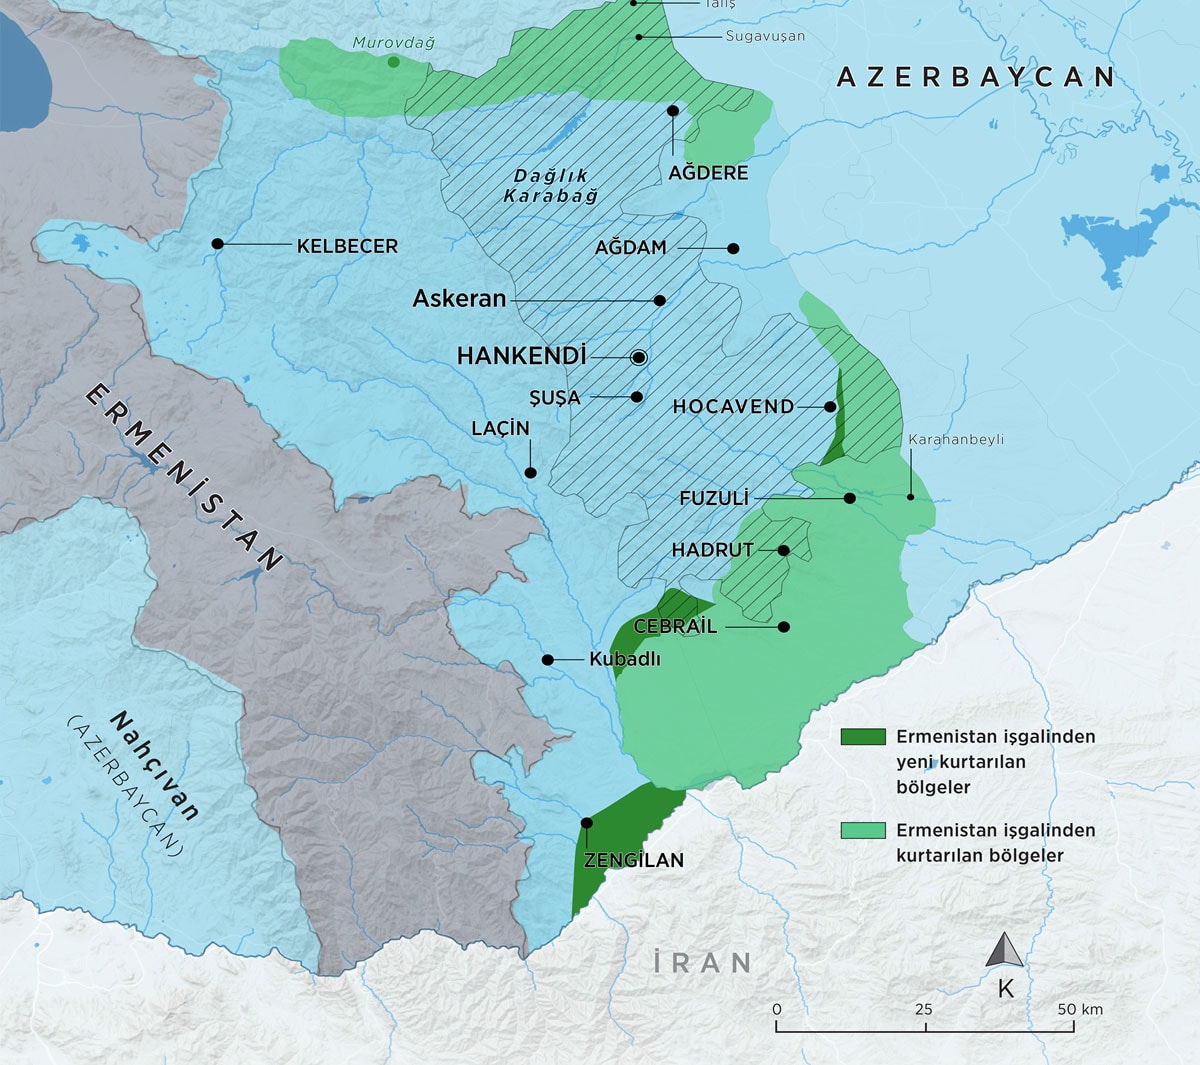 Azerbaycan, Karaba'da Ermenilerin ran ile balantsn kesiyor